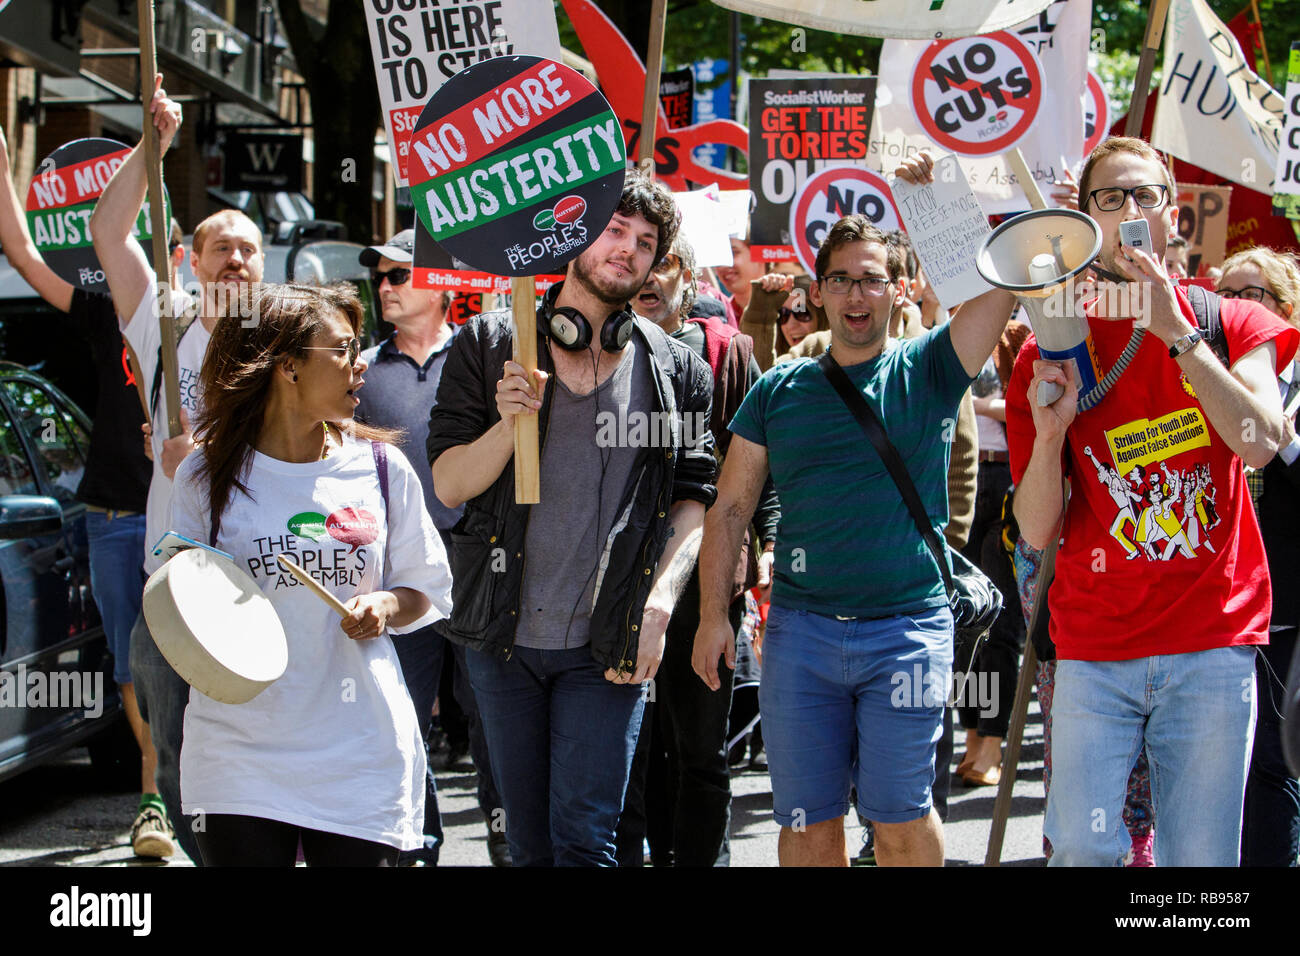 Il 30 maggio 2015. I manifestanti che trasportano anti-austerità cartelloni sono illustrati prendendo parte ad un anti-austerità marcia di protesta e di dimostrazione a Bristol. Foto Stock